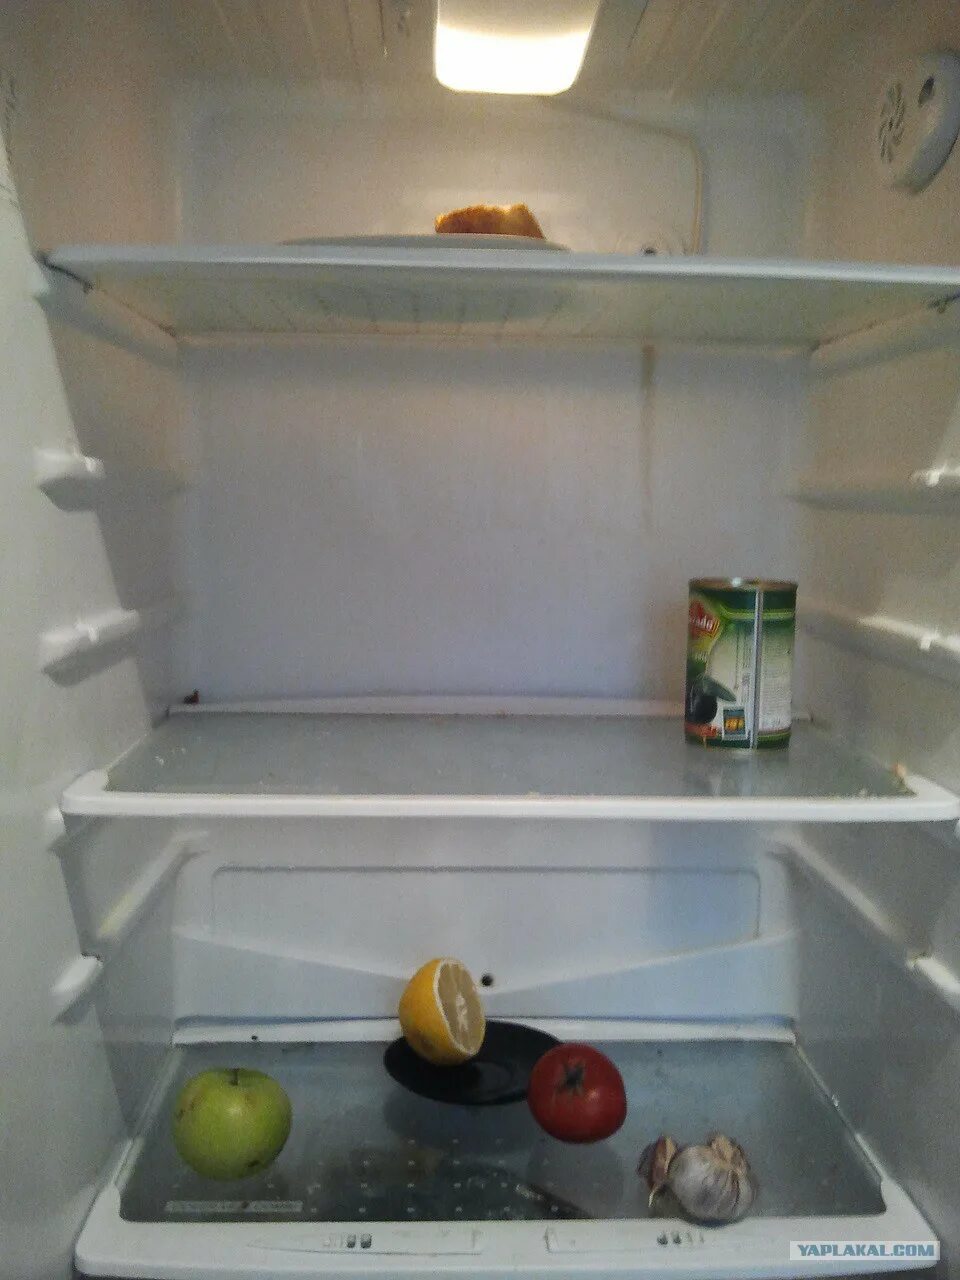 Пустой холодильник. В холодильнике пусто. Пустой старый холодильник. Пустой холодильник на кухне.